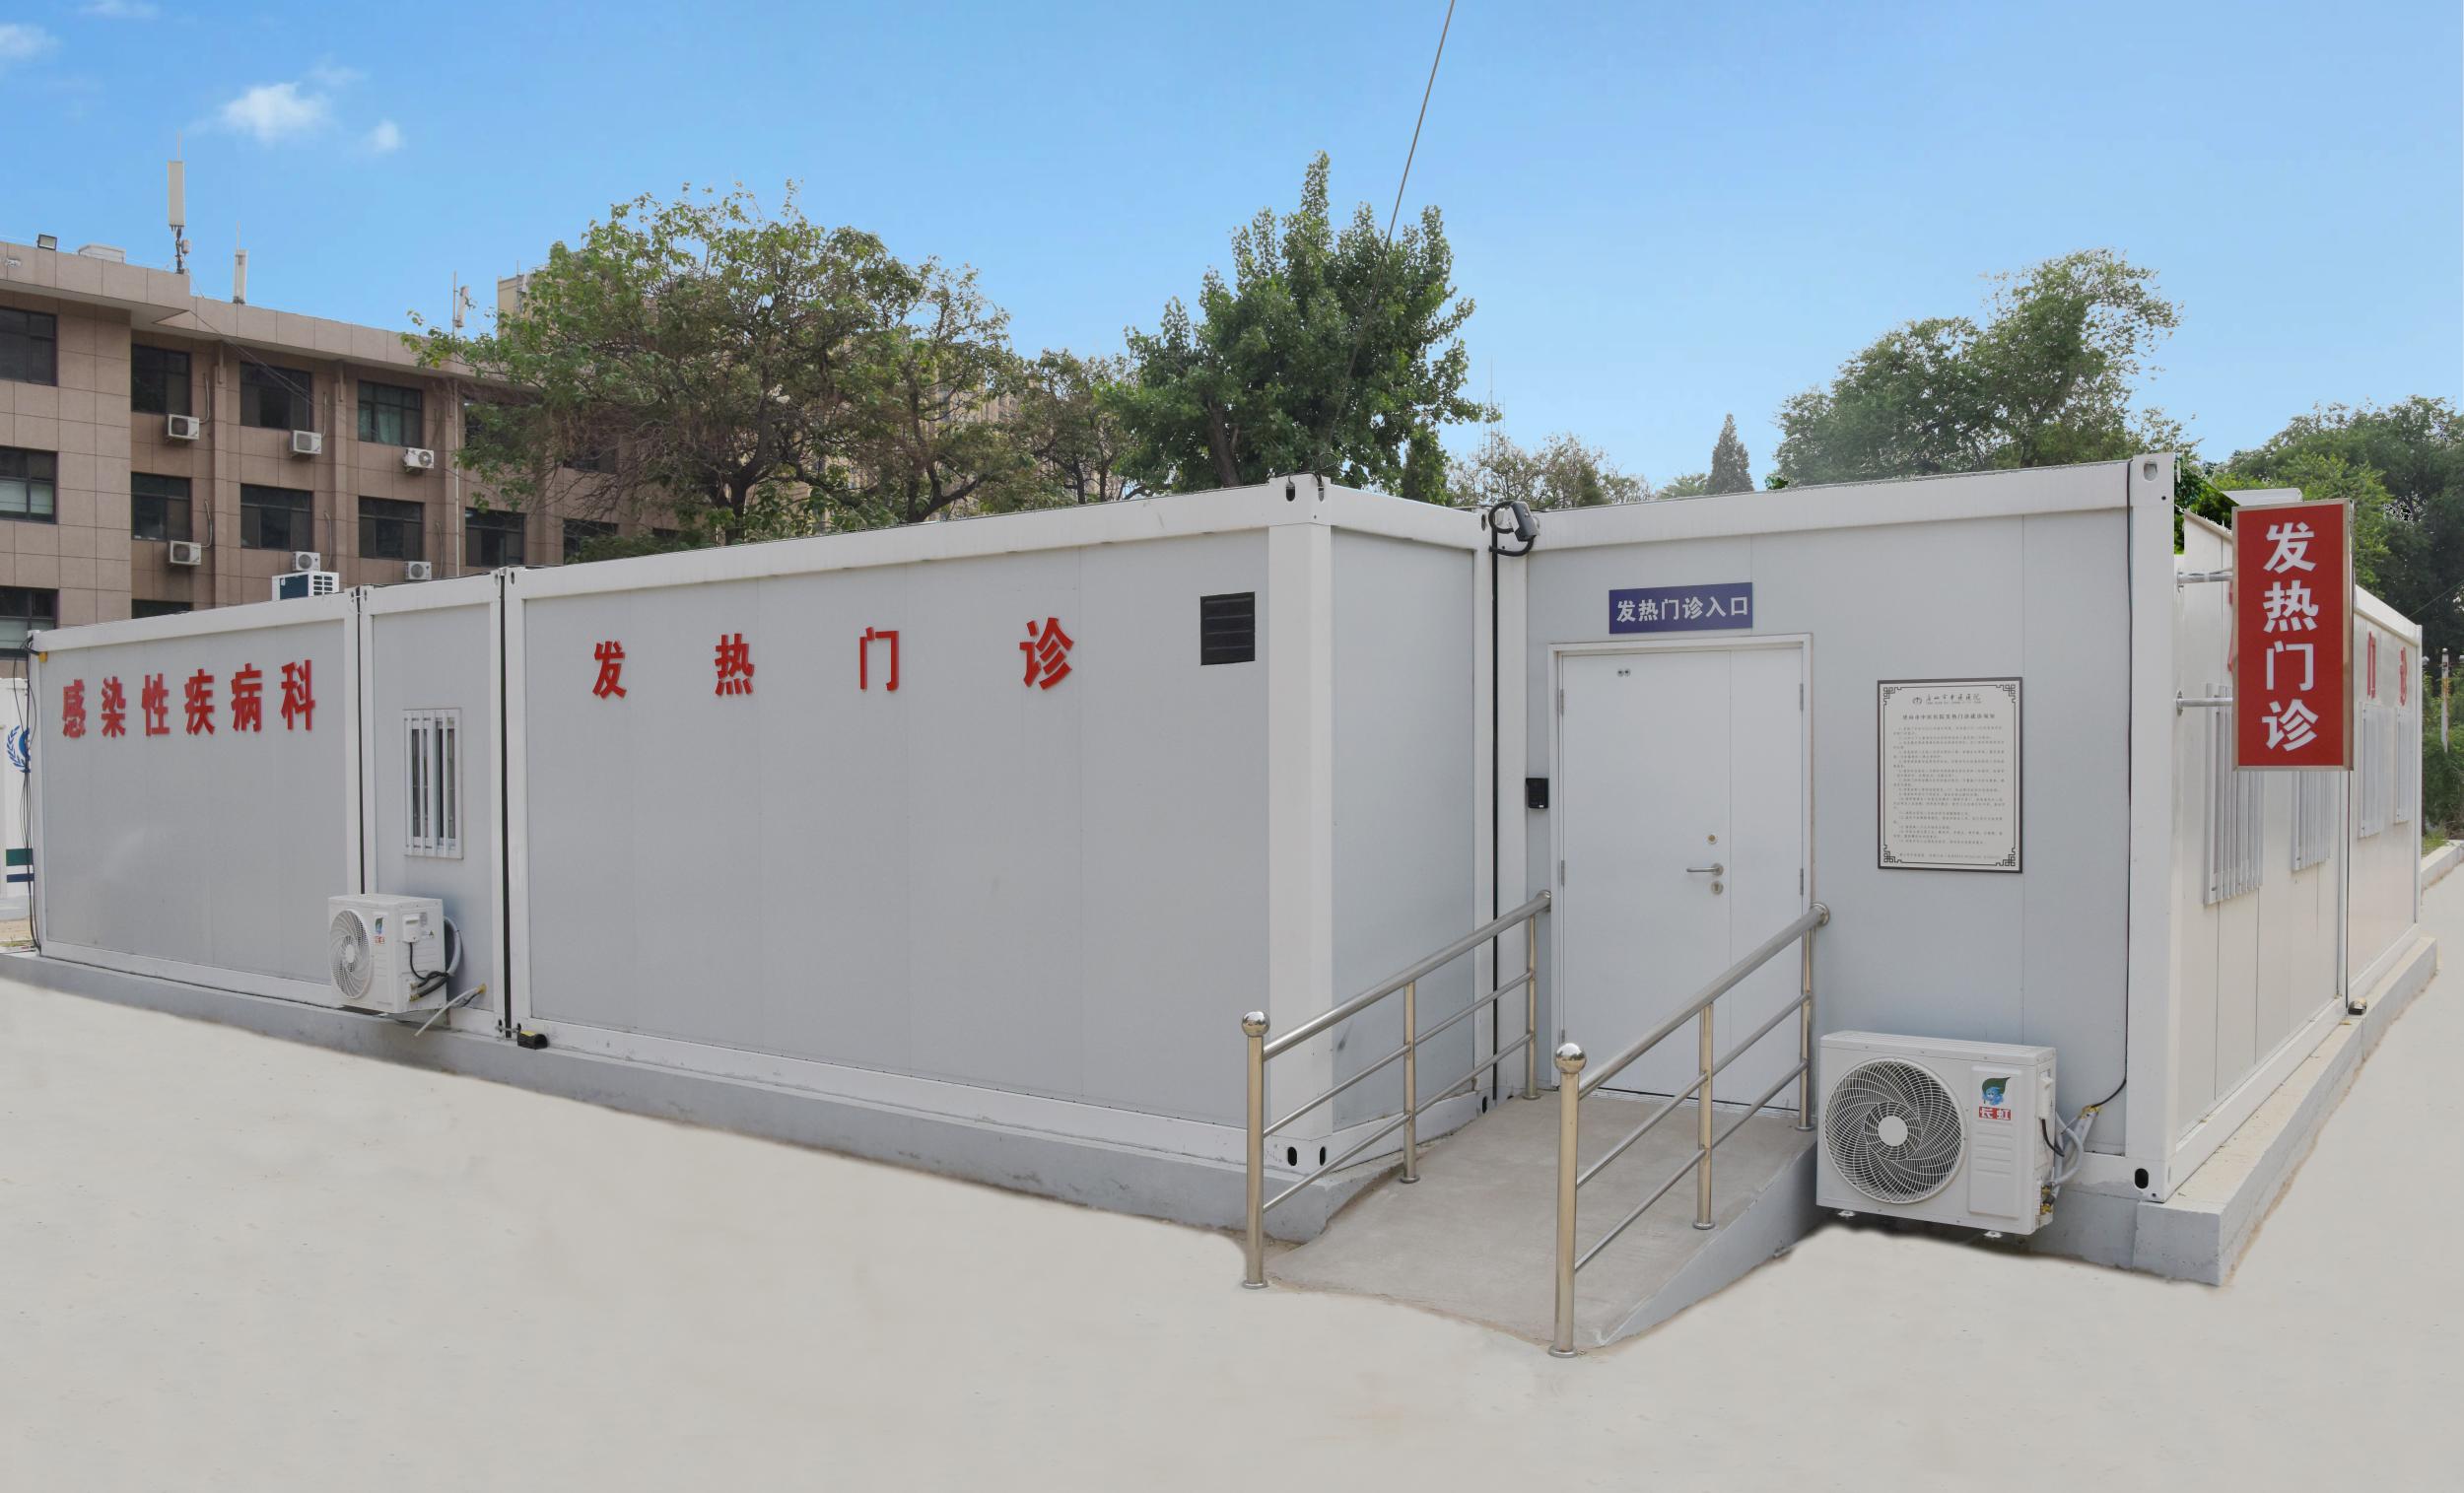 唐山市中医医院以党建为引领建设新的标准化发热门诊